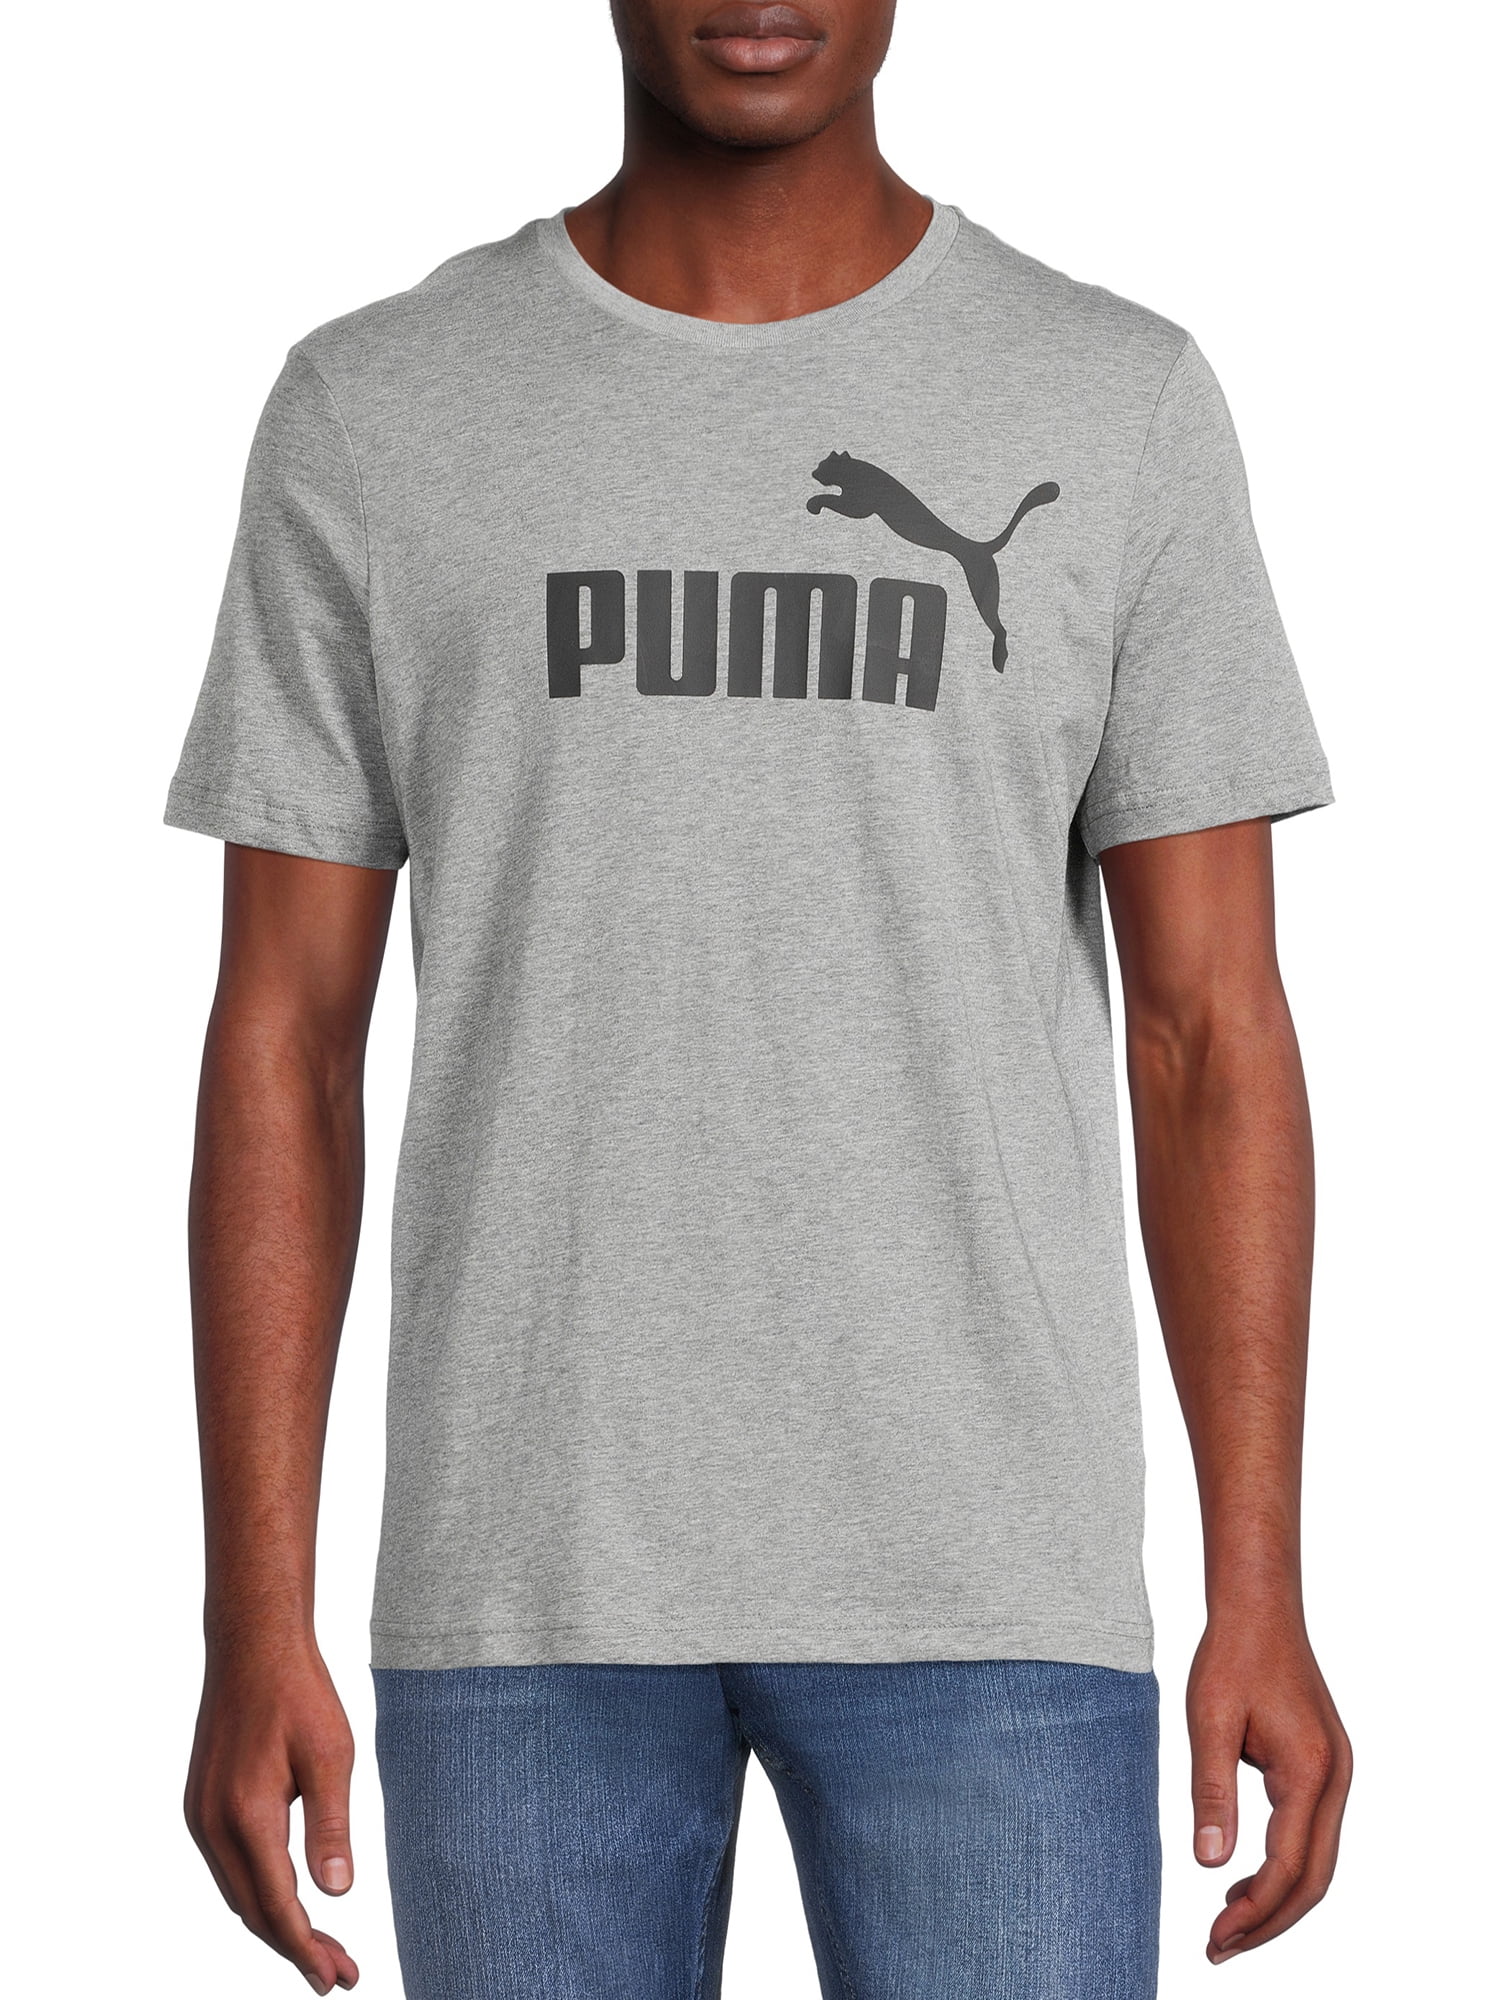 La tia de la USA - Camiseta PUMA HOMBRE : 80 mil pesos disponibles talla  XXL, originales con garantía y envió gratis @latiadelausa #puma #camisetas  #original #colombia #camisa #originales #latiadelausa